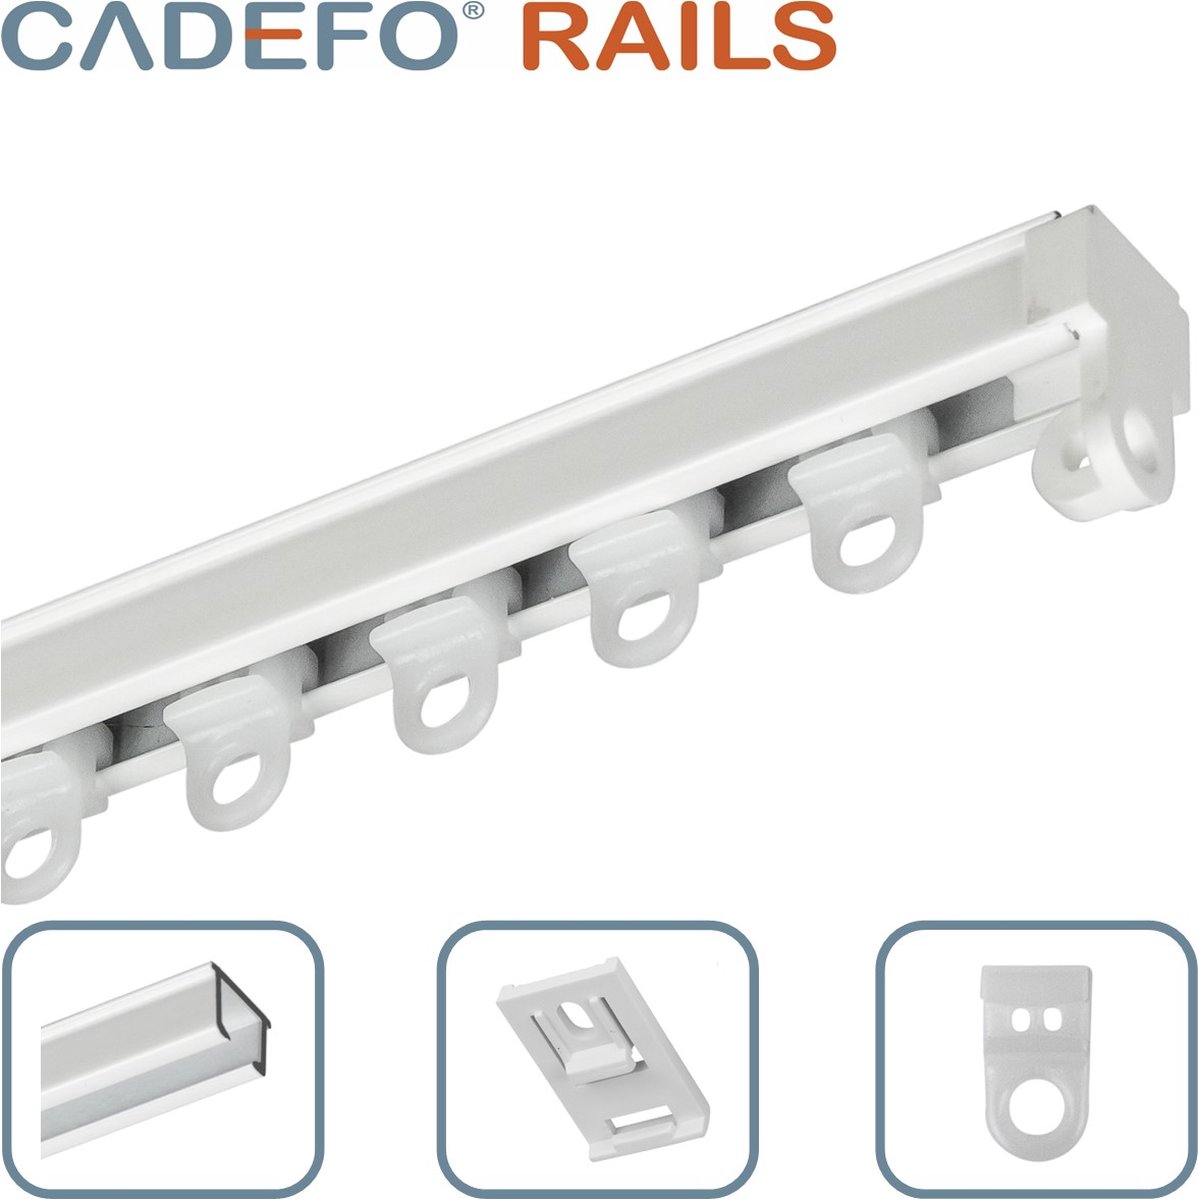 CADEFO RAILS (451 - 500 cm) Gordijnrails - Compleet op maat! - UIT 1 STUK - Leverbaar tot 6 meter - Plafondbevestiging - Lengte 492 cm